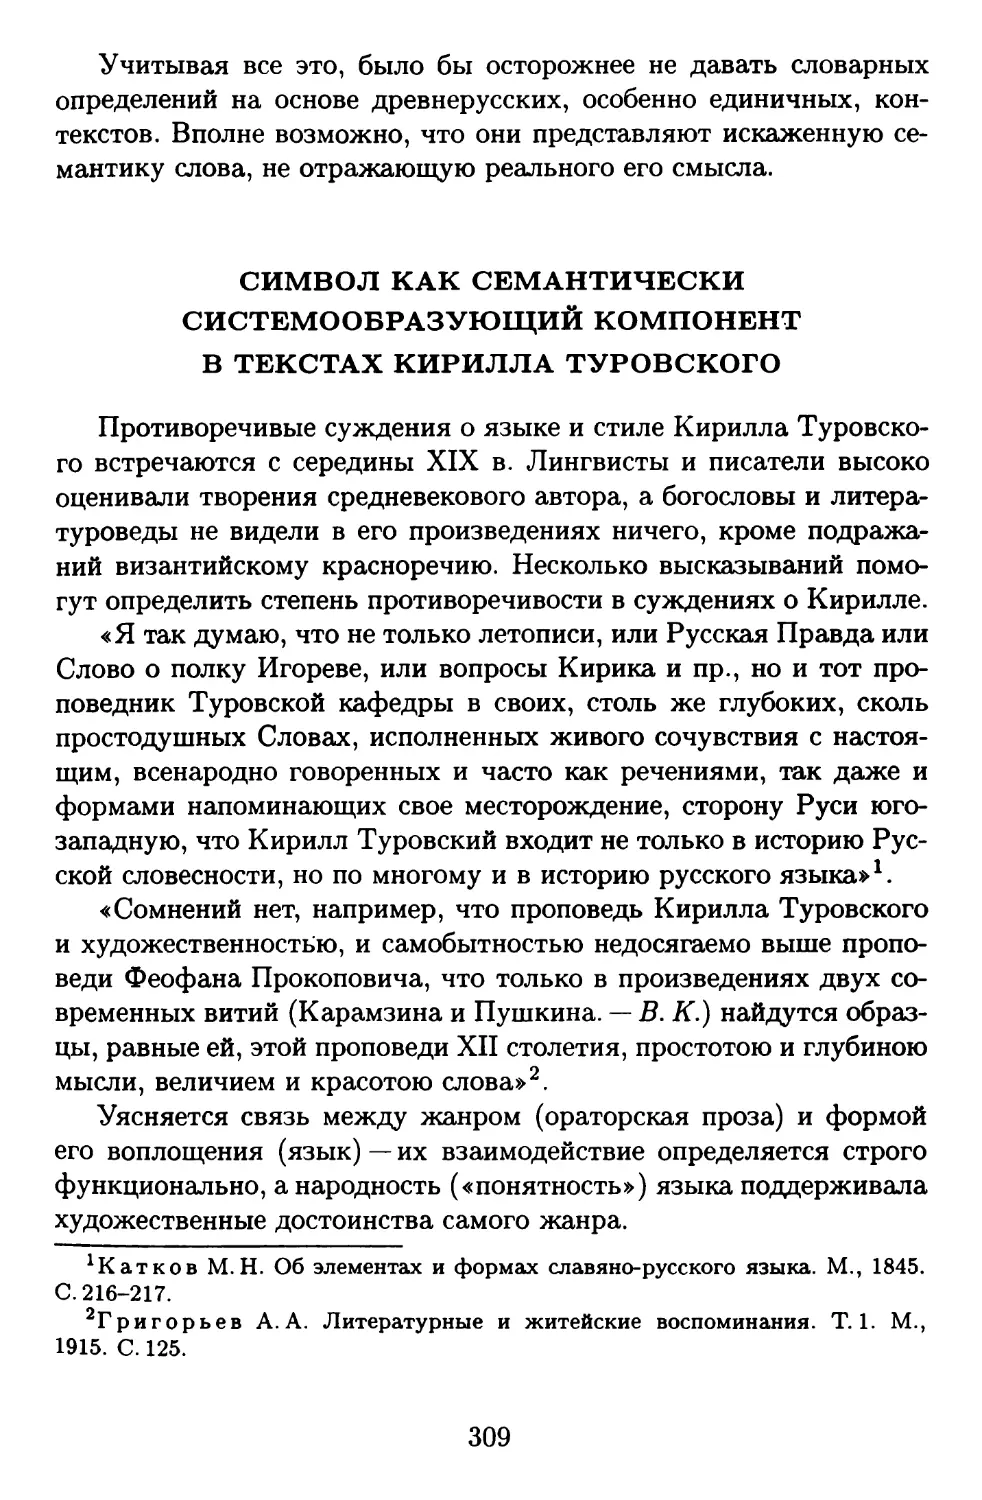 Символ как семантически системообразующий компонент в текстах Кирилла Туровского